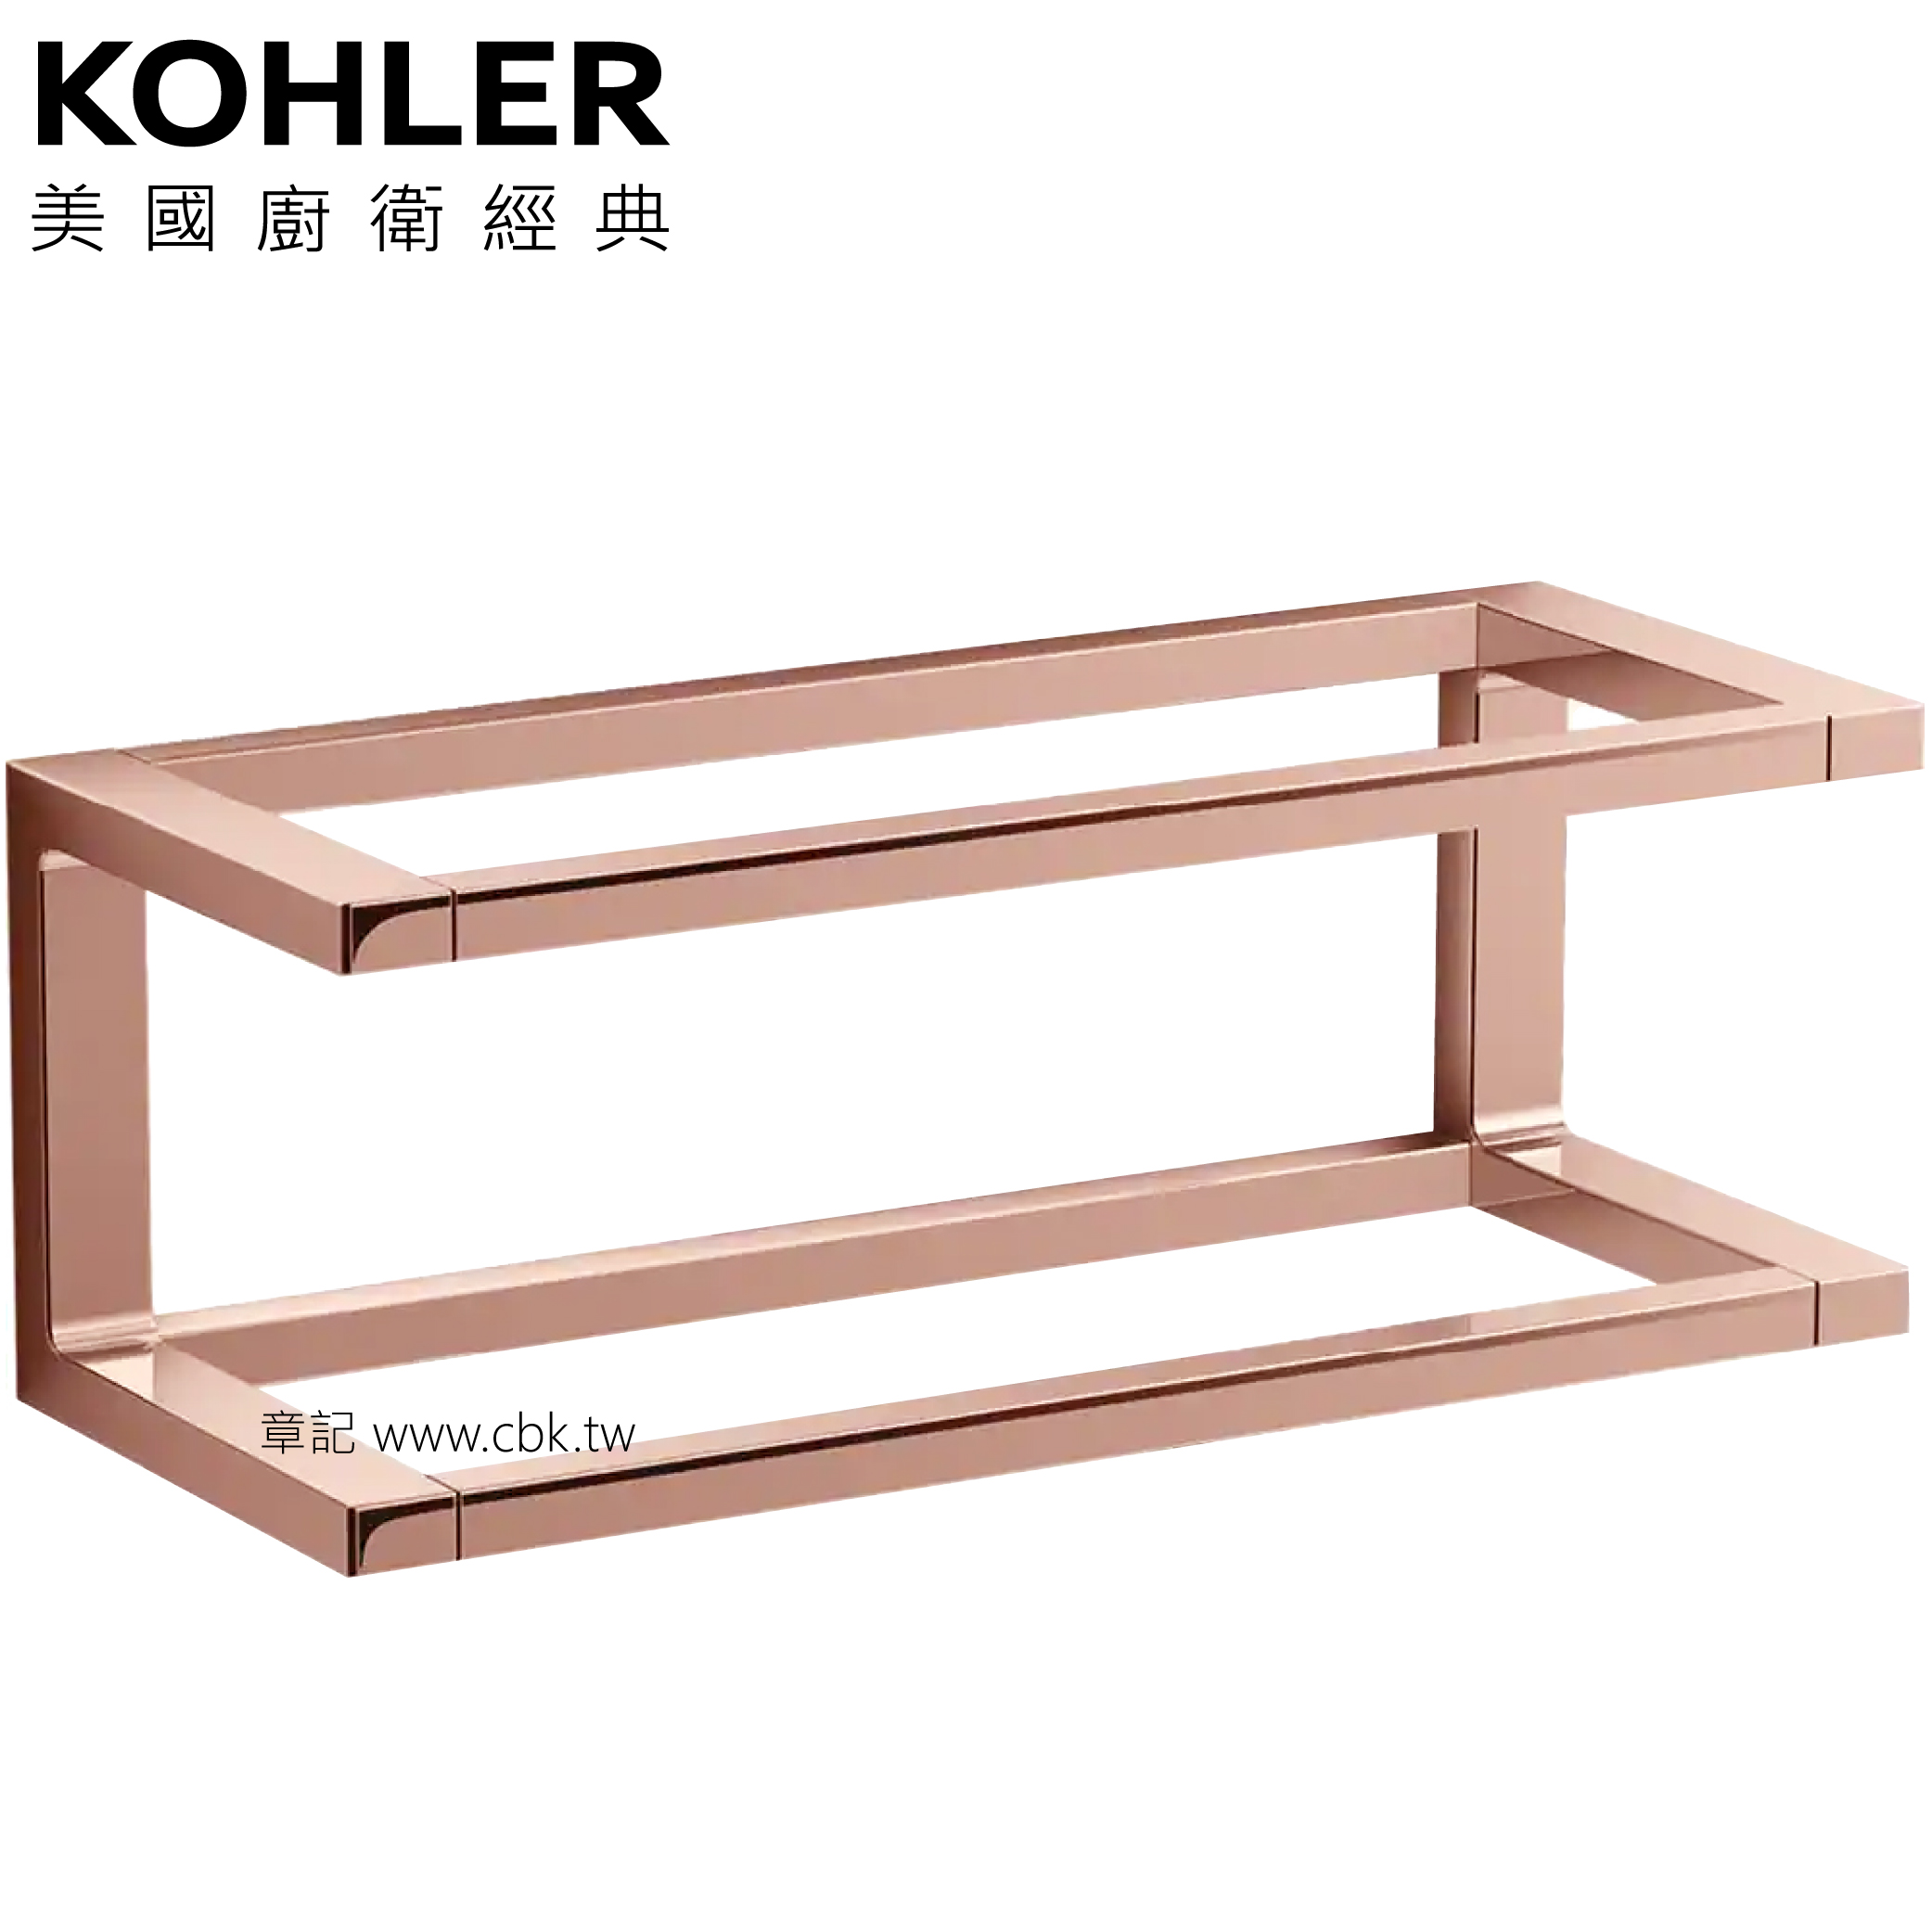 KOHLER Stages 置物架(玫瑰金) K-27353T-RGD  |浴室配件|置物架 | 置物櫃